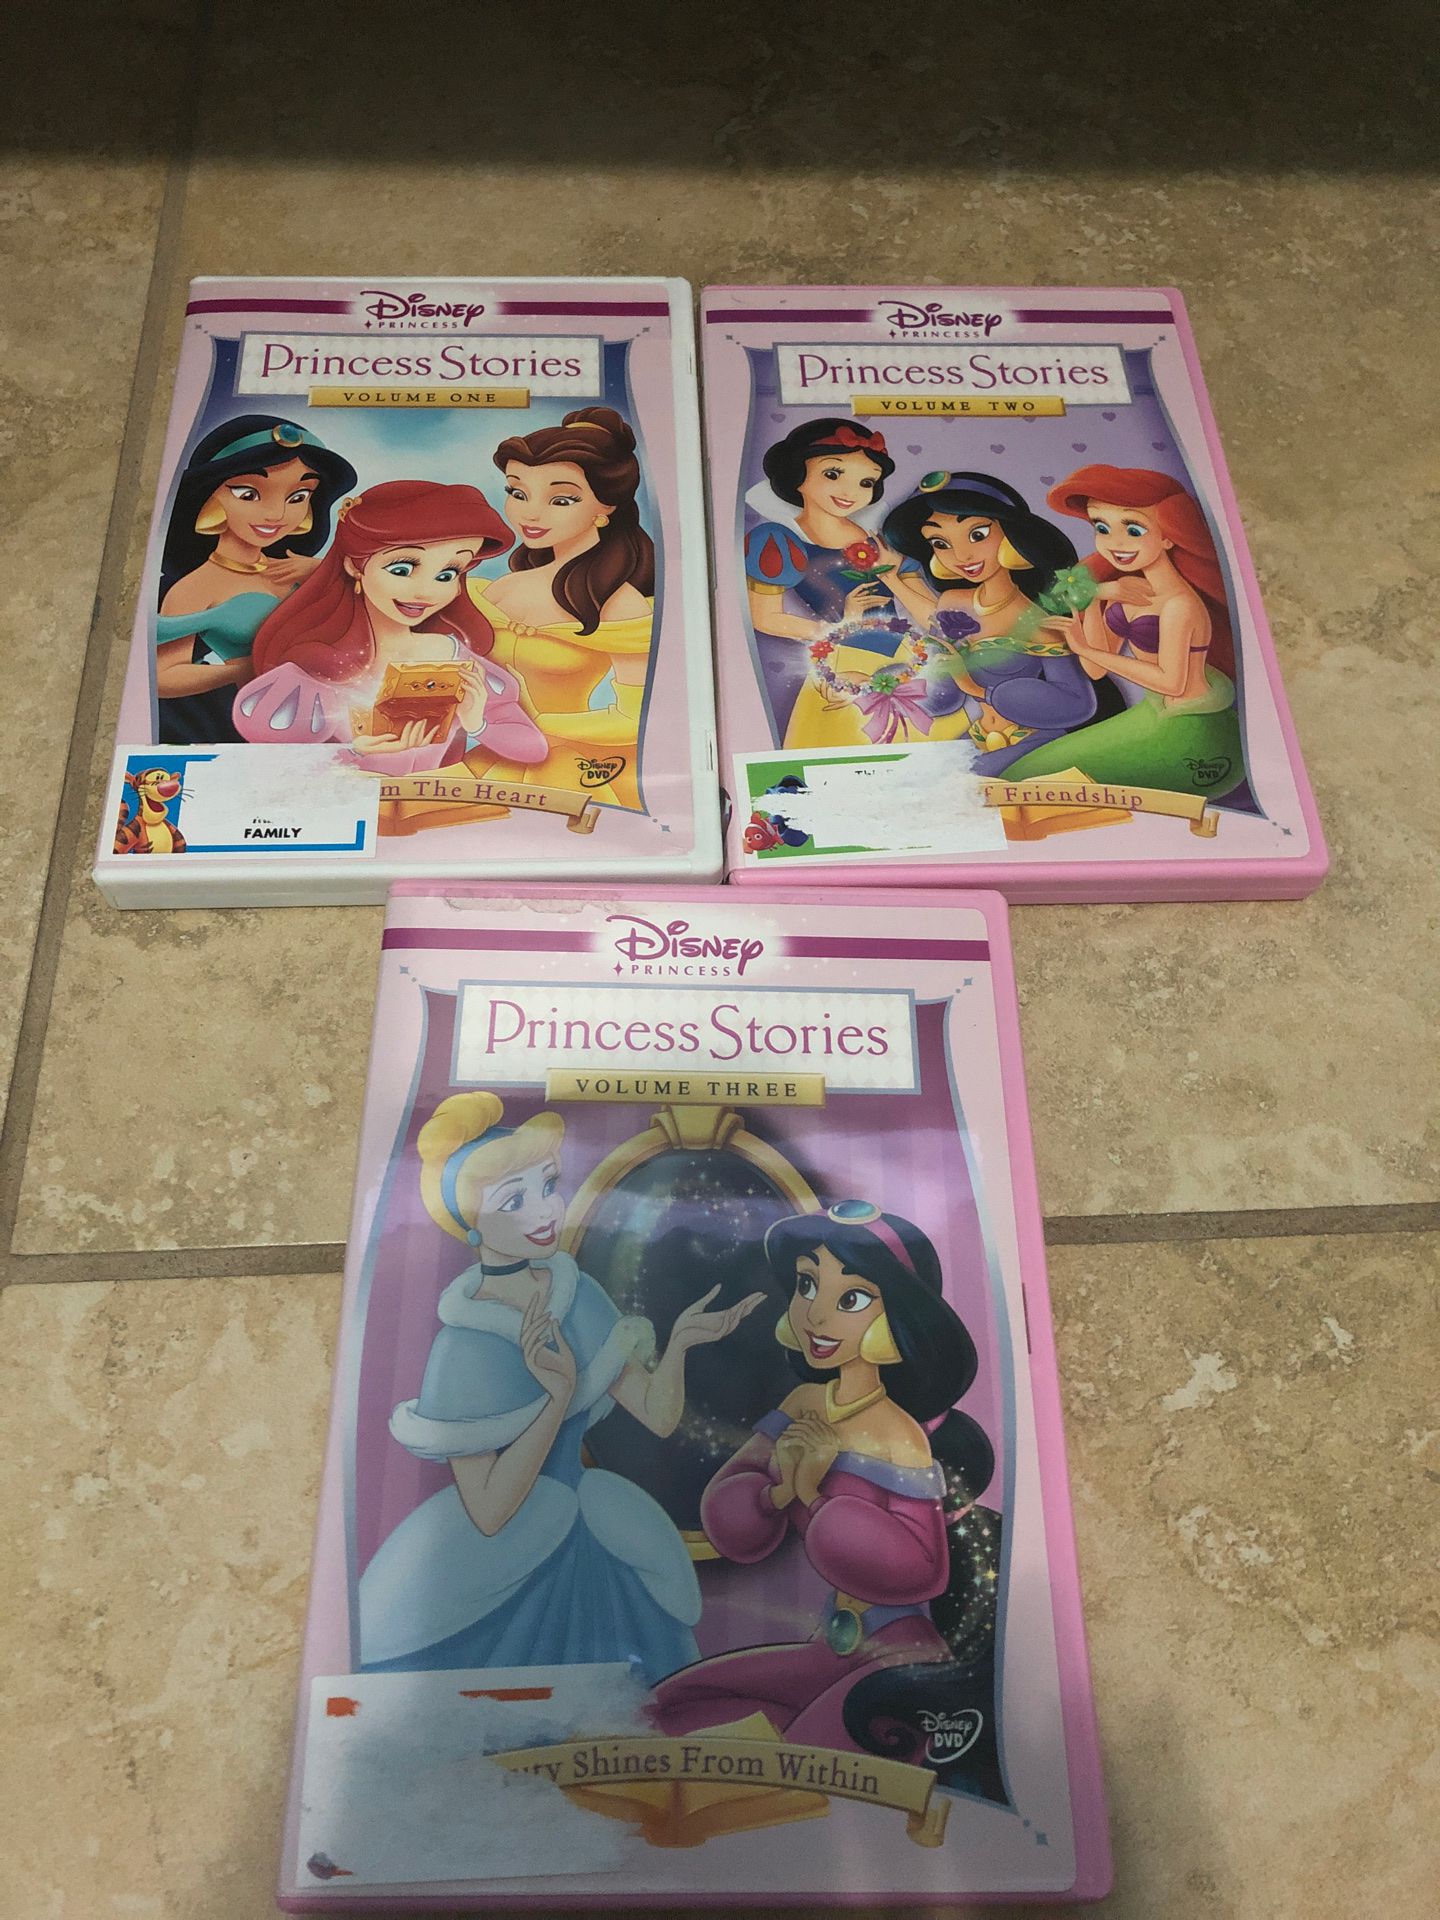 Disney Princess stories